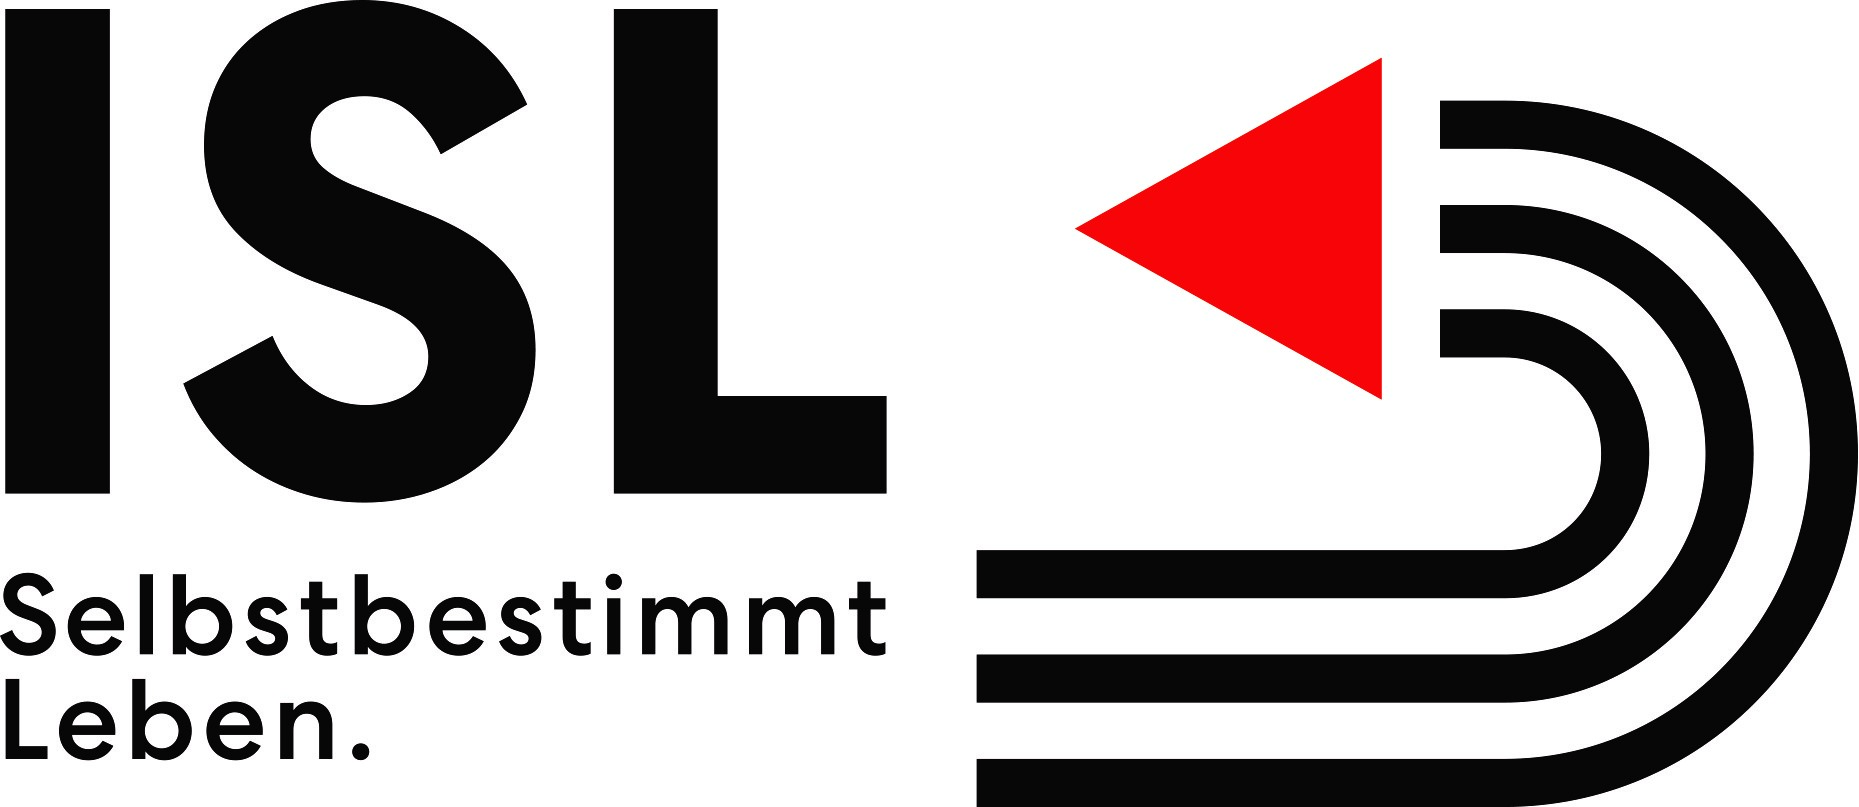 Logo ISL Selbstbestimmt Leben Drei gebogene schwarze Striche mit rotem Dreieck